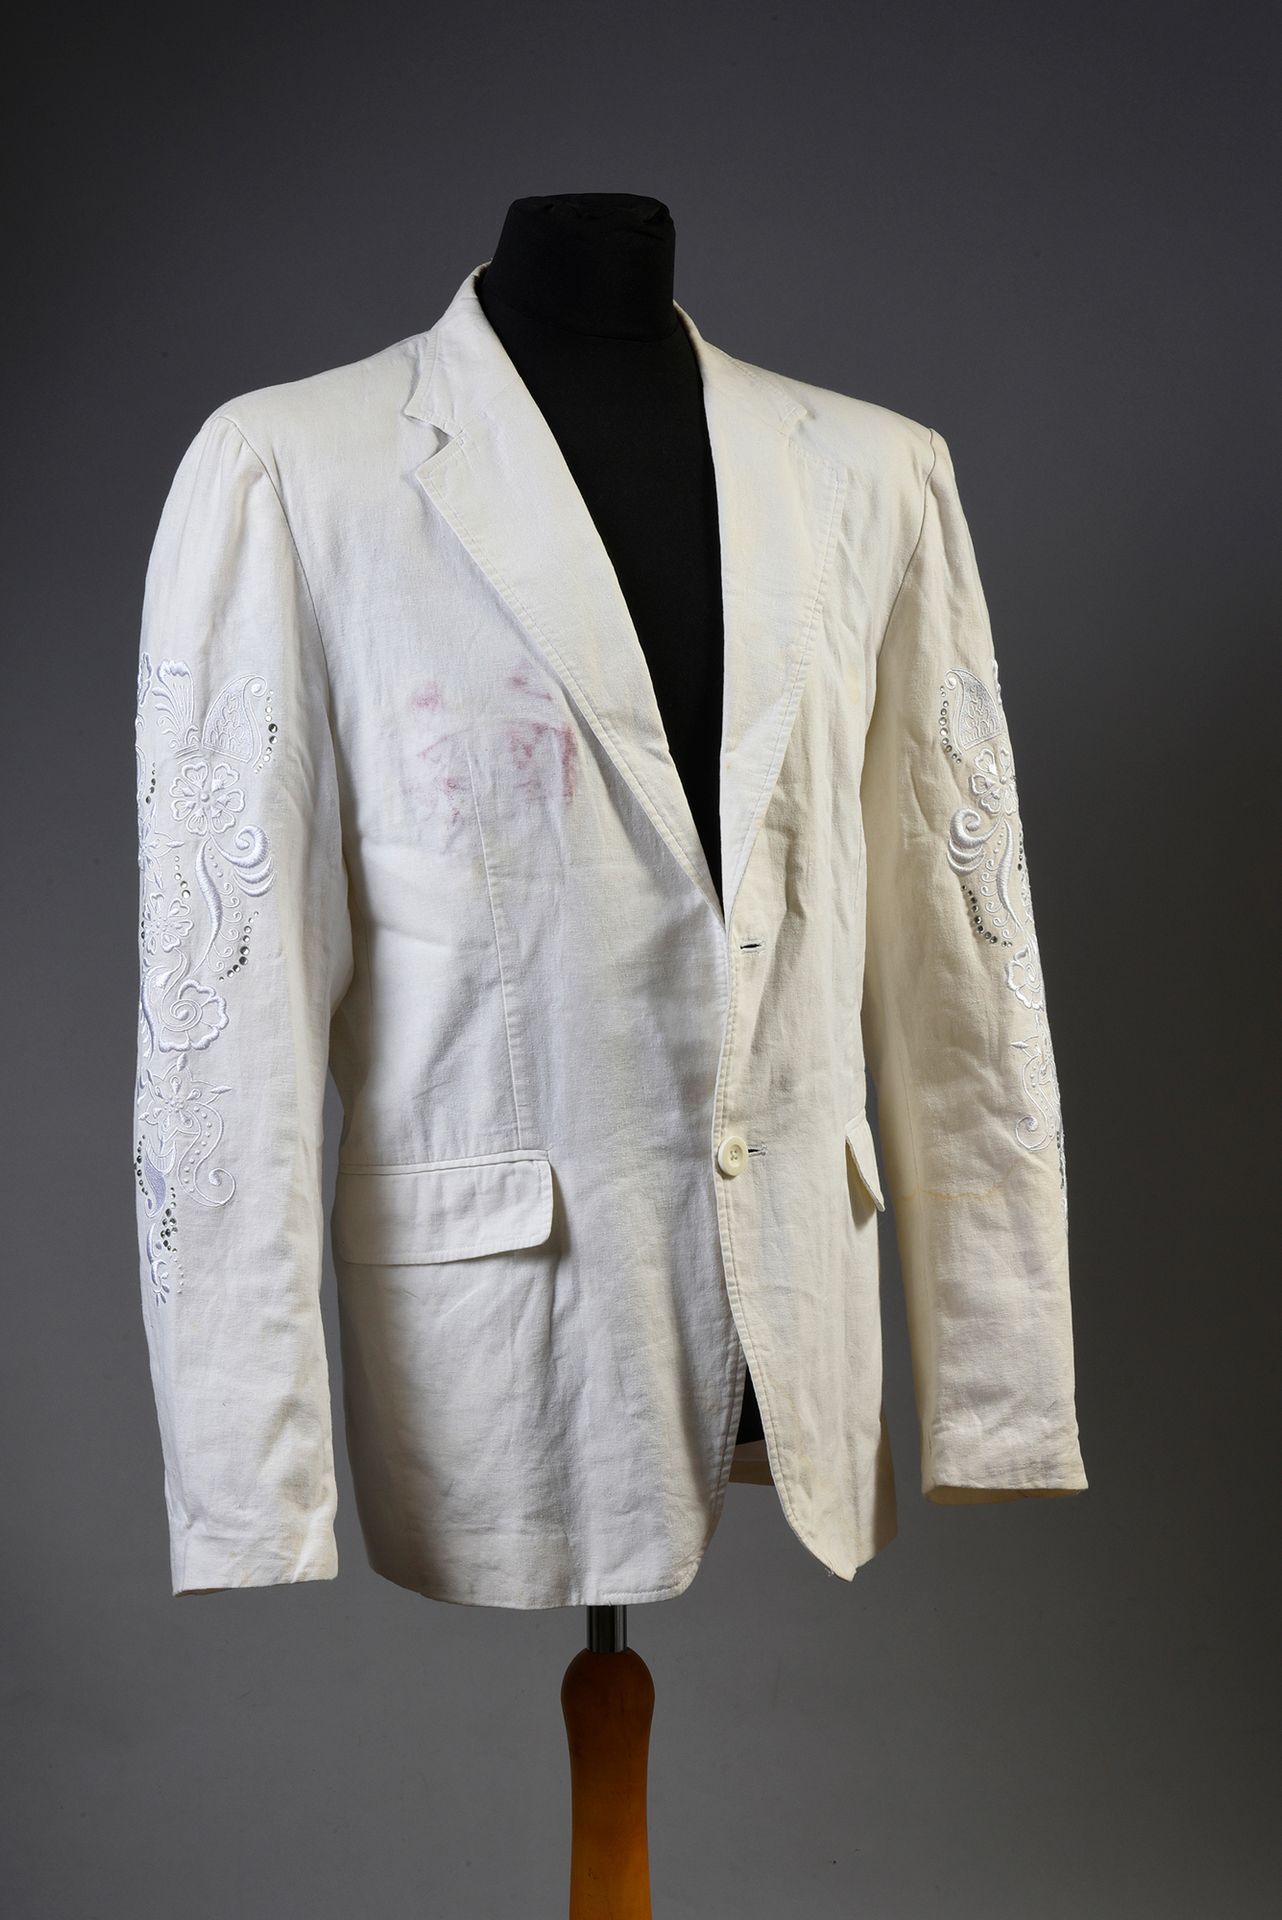 Null JOHNNY HALLYDAY : 1 veste en coton blanc, de la marque « RG 512 », achetée &hellip;